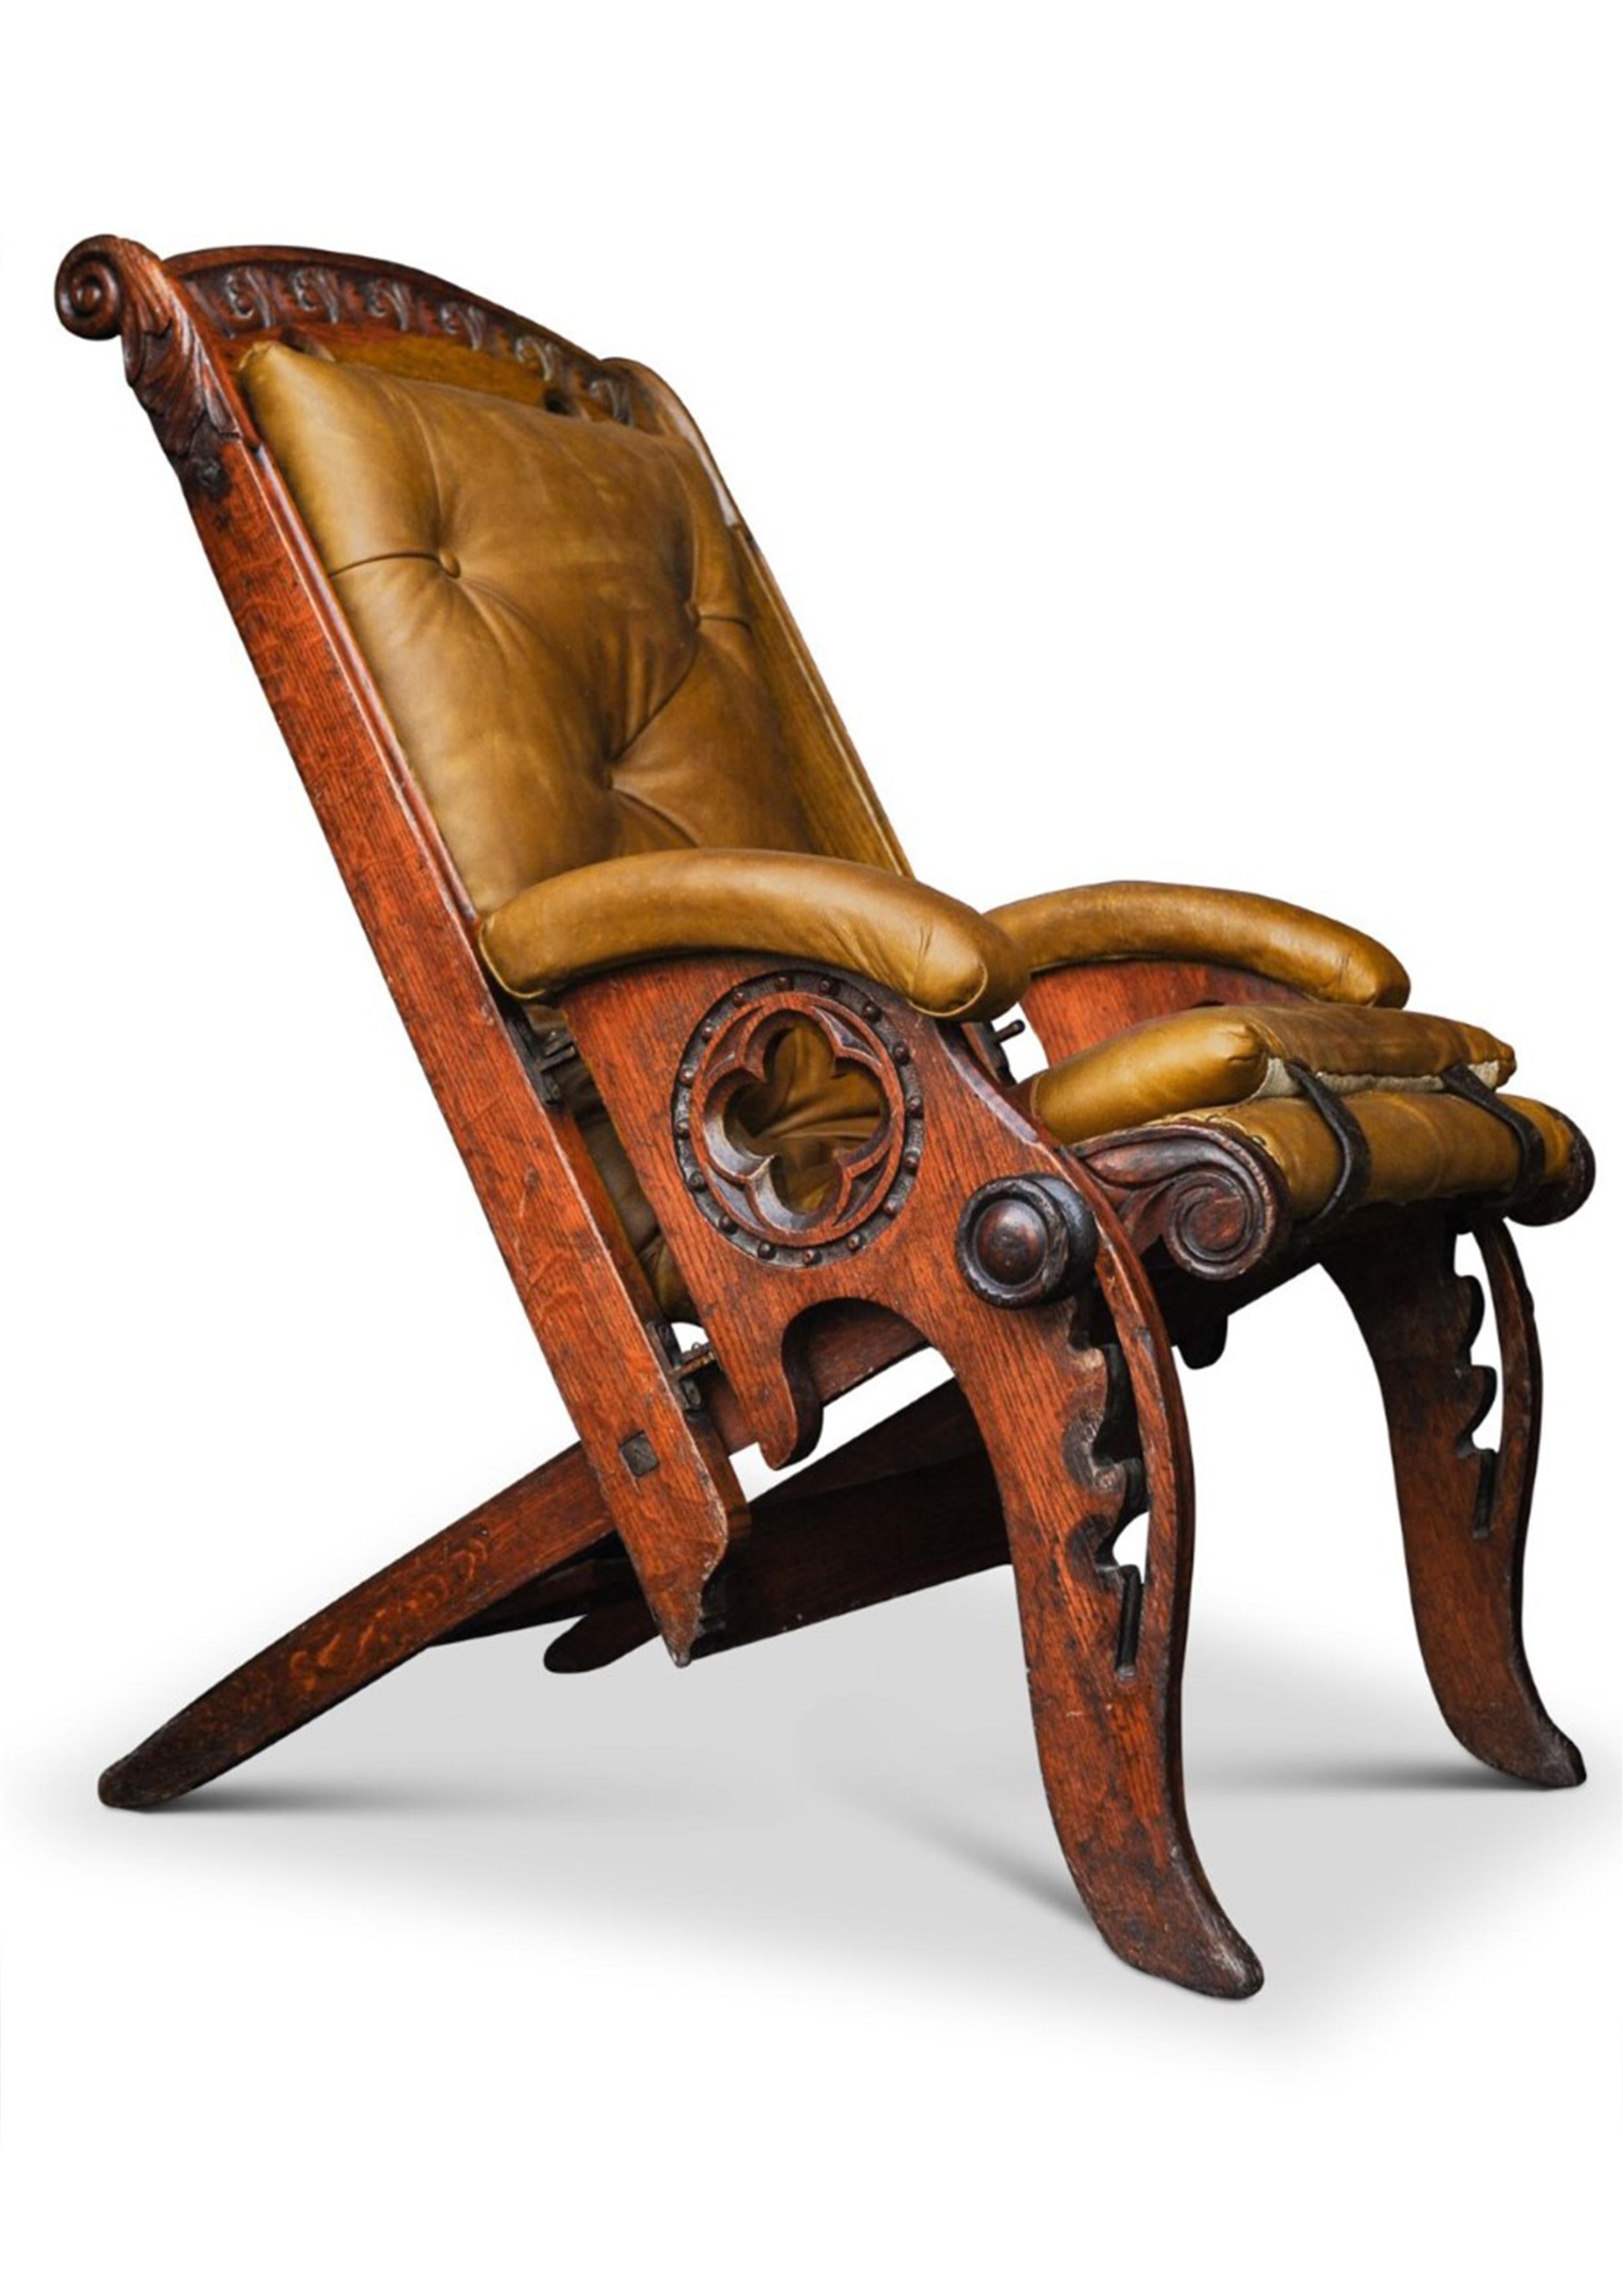 Ein 19. Jahrhundert Campaigner Stuhl von Herbert McNair Design geschnitzt Eiche & poliert tan Leder verstellbare Liegesitz.


James Herbert MacNair (23. Dezember 1868 - 22. April 1955) war ein schottischer Künstler, Designer und Lehrer, dessen